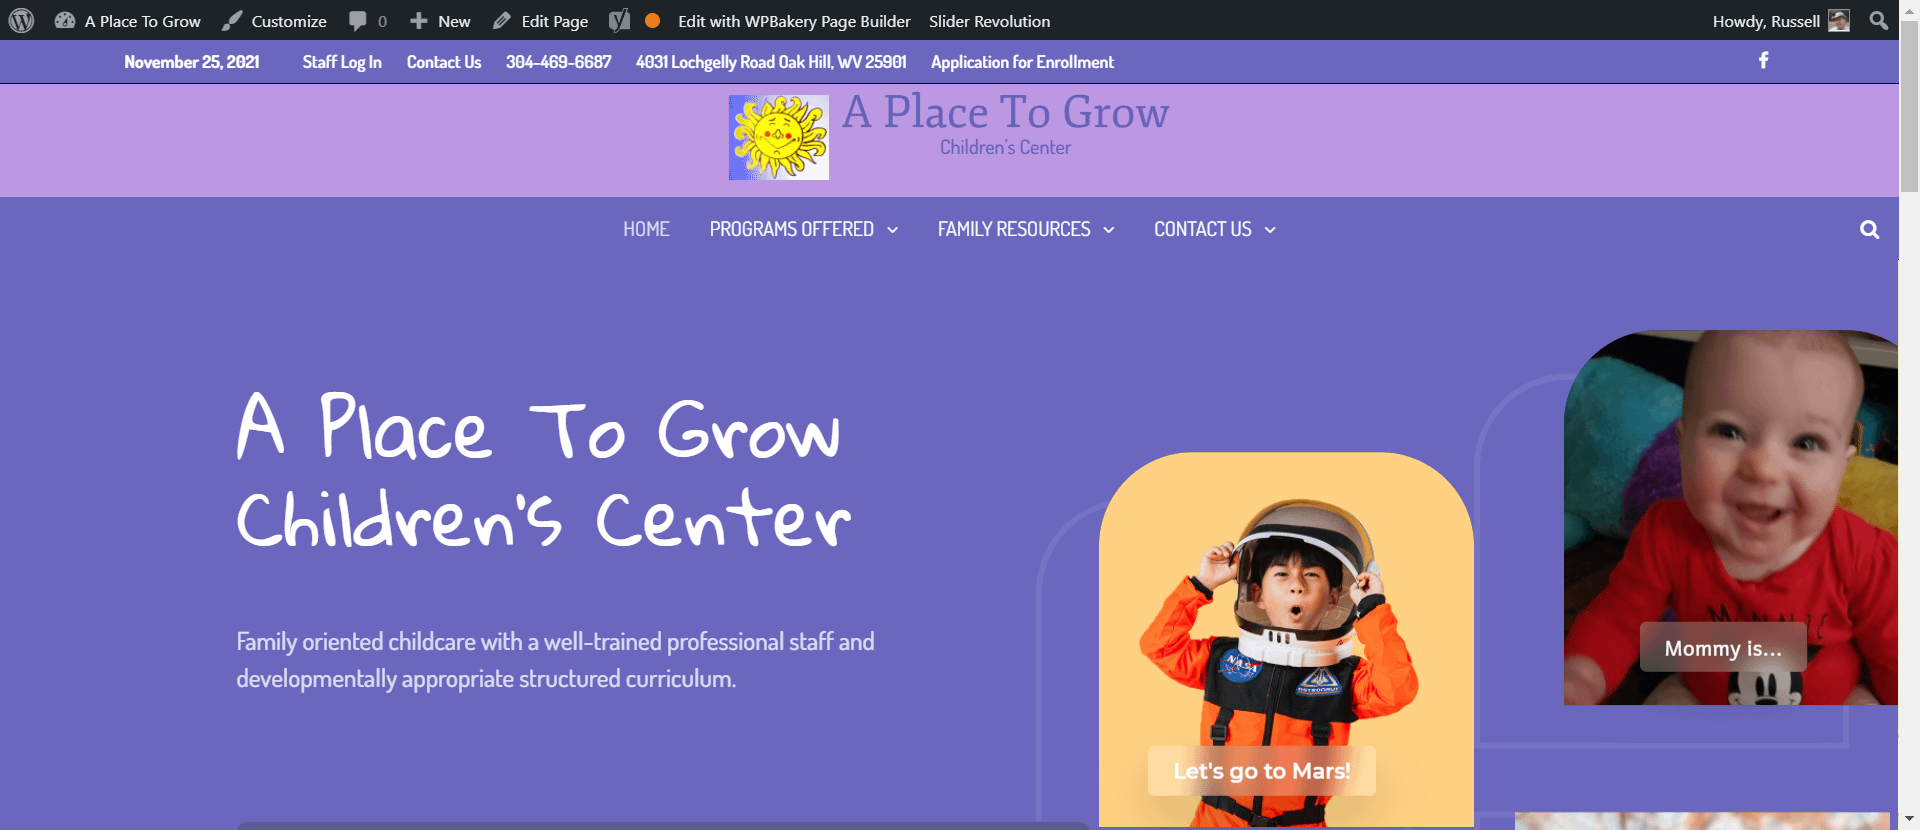 A Place To Grow Children’s Center Oak Hill West Virginia